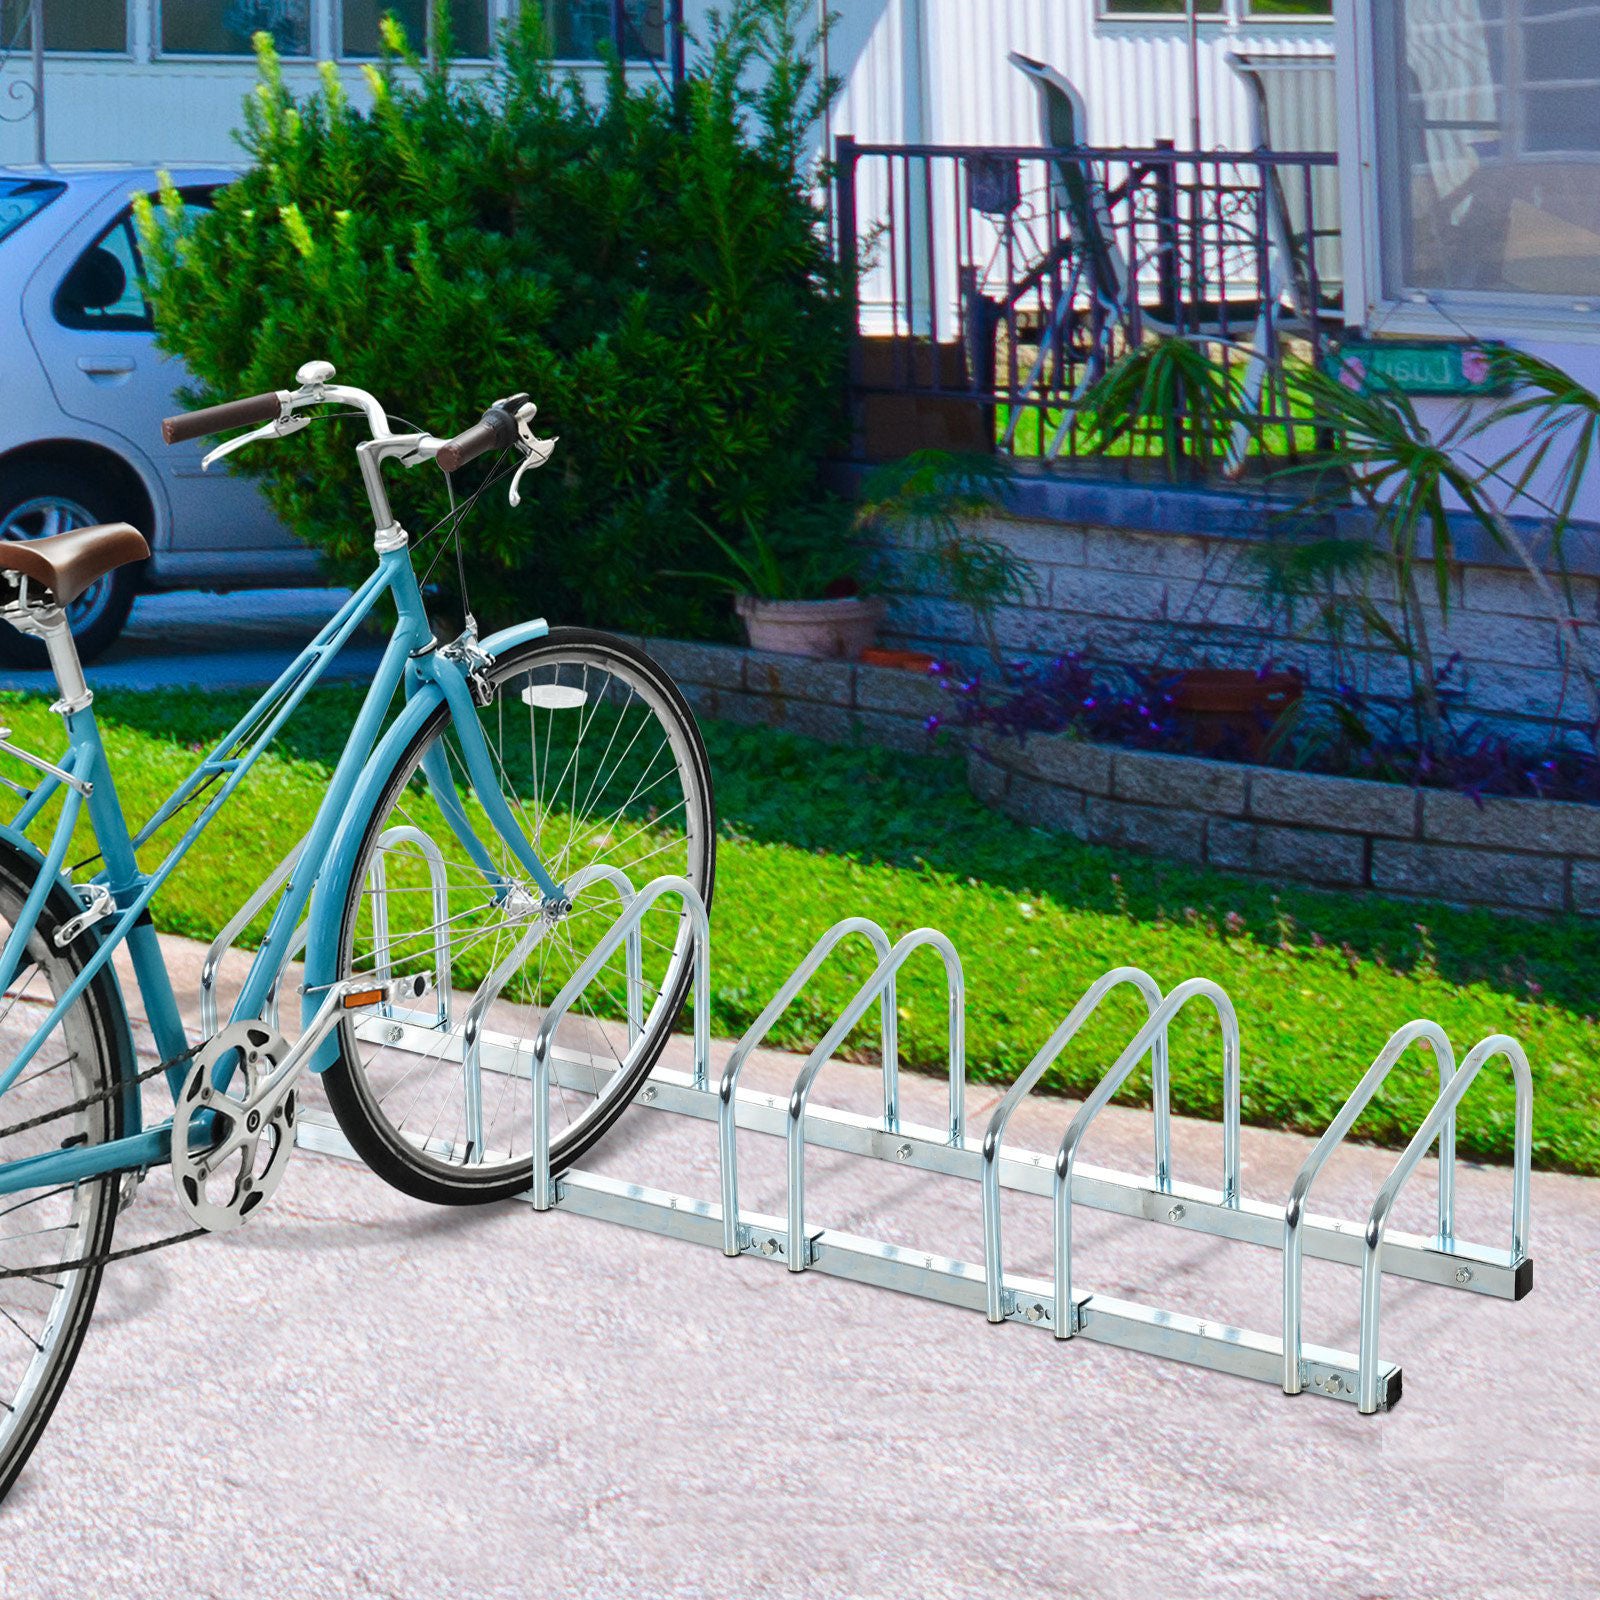 Nancy's Big Pond Bicycle Stand - Silver - Steel - 51.18 cm x 12.99 cm x 10.63 cm